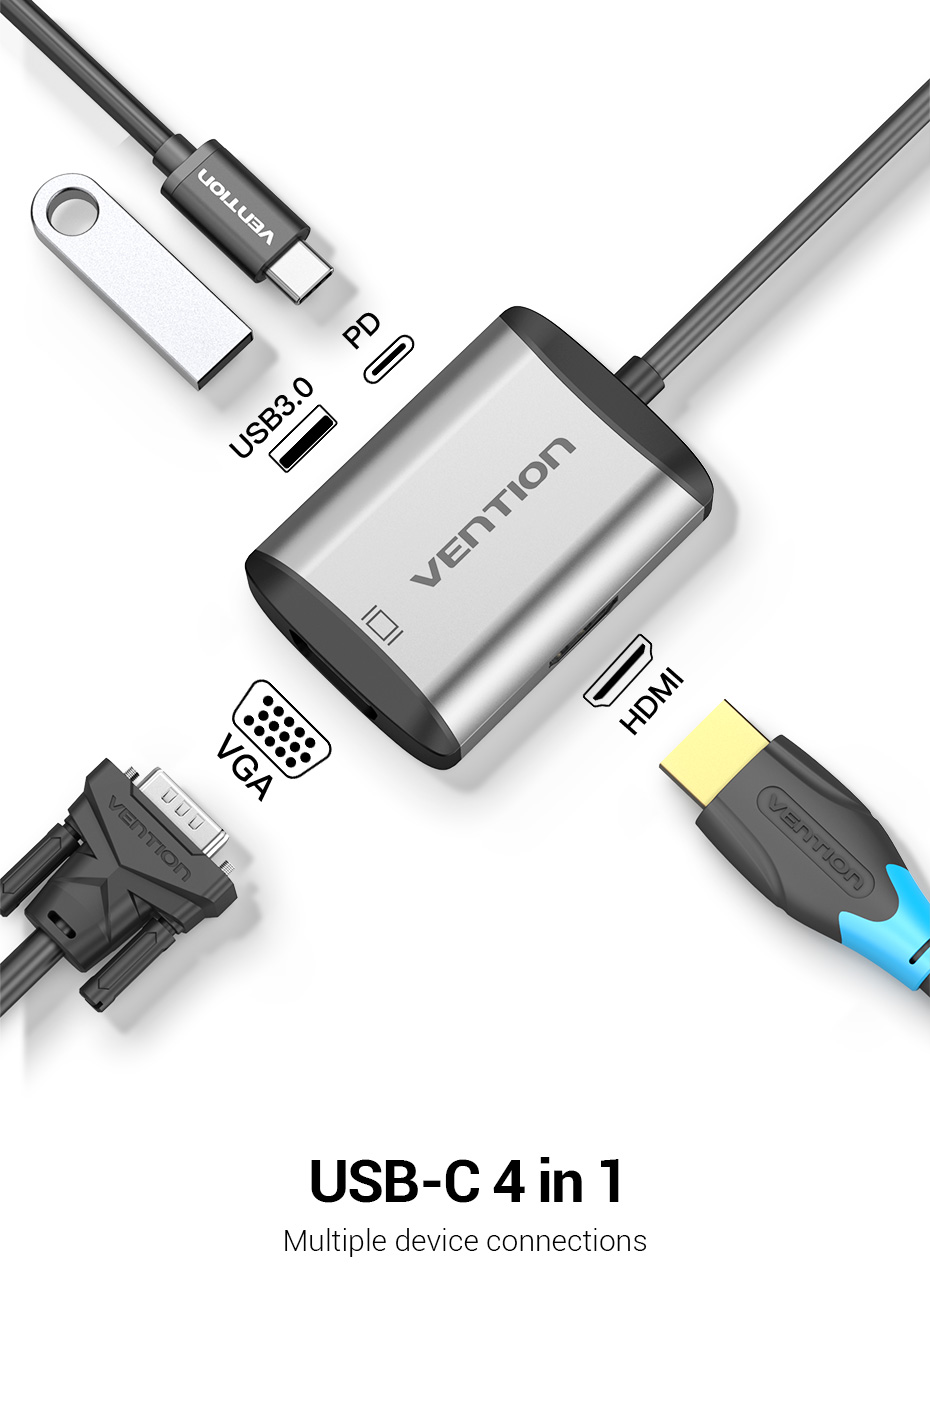 Cáp chuyển USB Type C to HDMI + VGA + USB + PD (87W) Vention TFAHB(4 in 1) - Hàng chính hãng